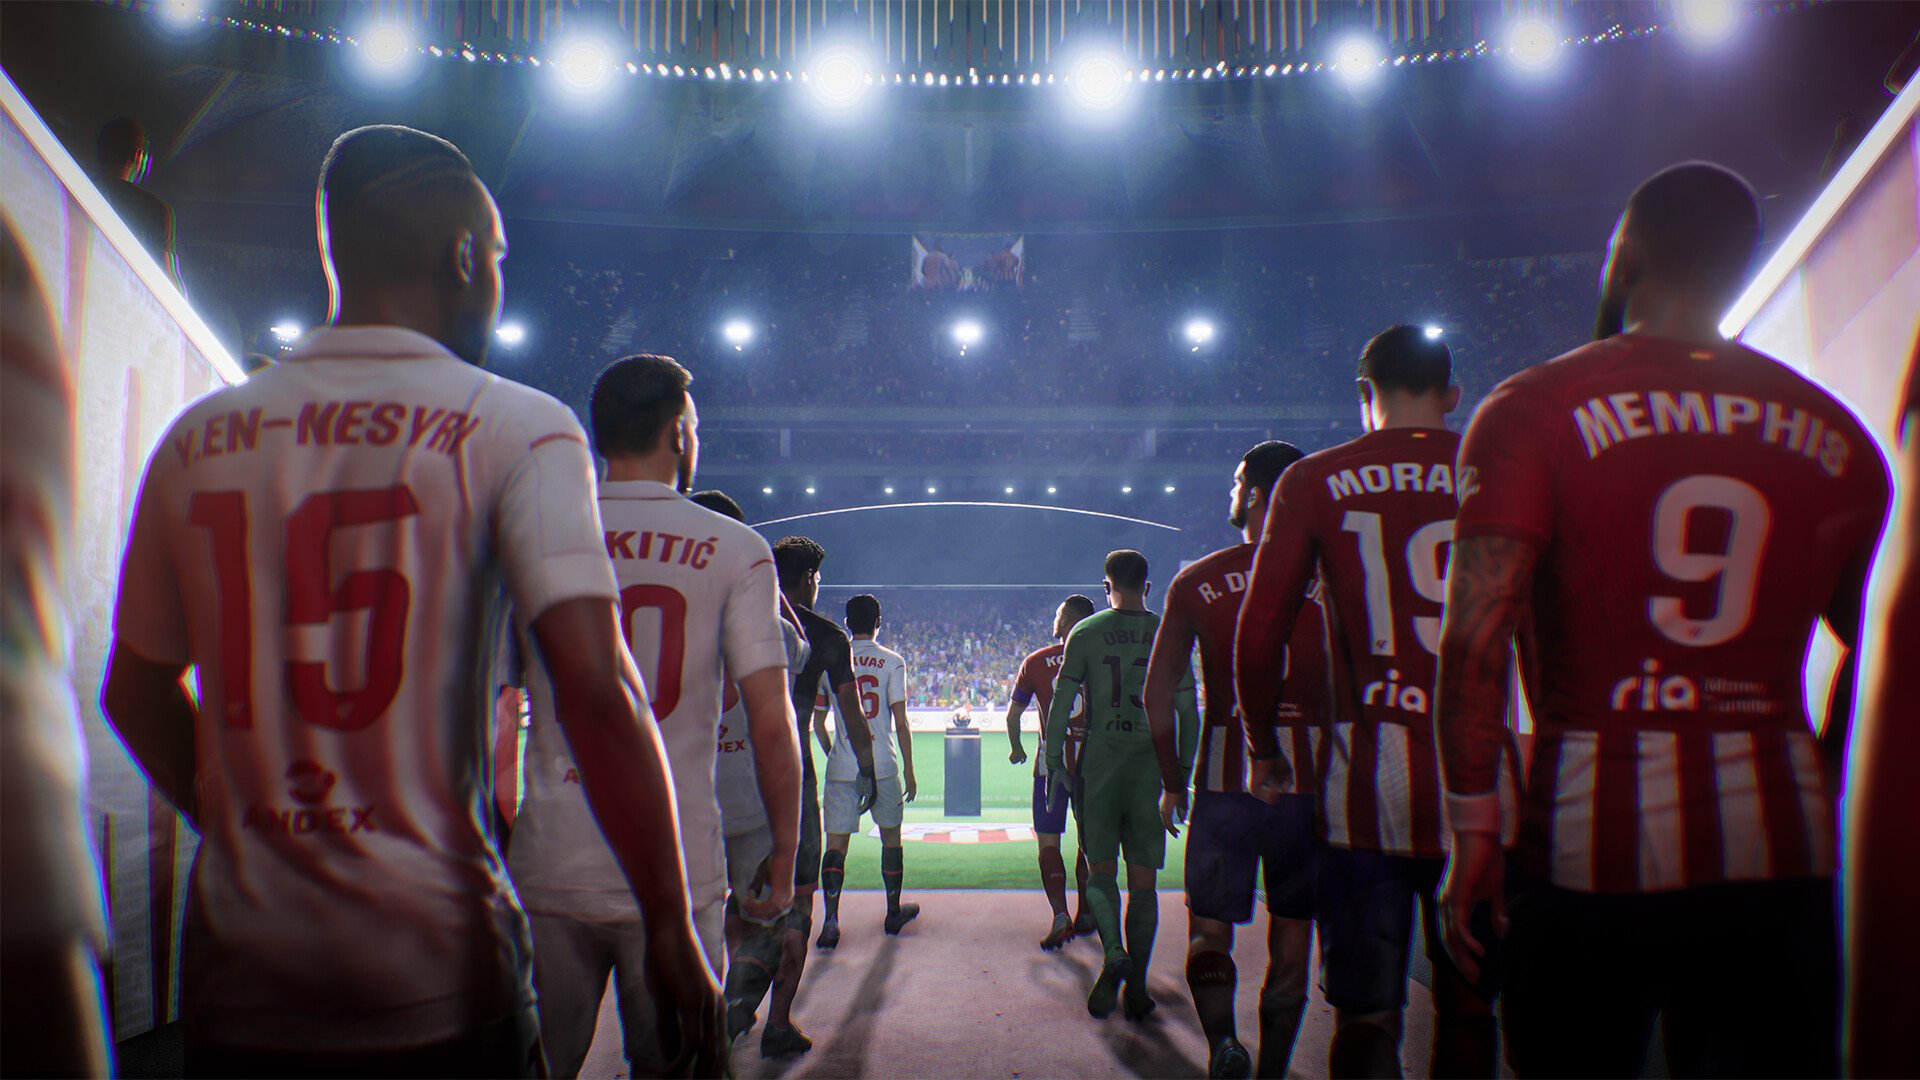 Sucessor do Fifa, EA FC 24 é lançado oficialmente em todo o mundo